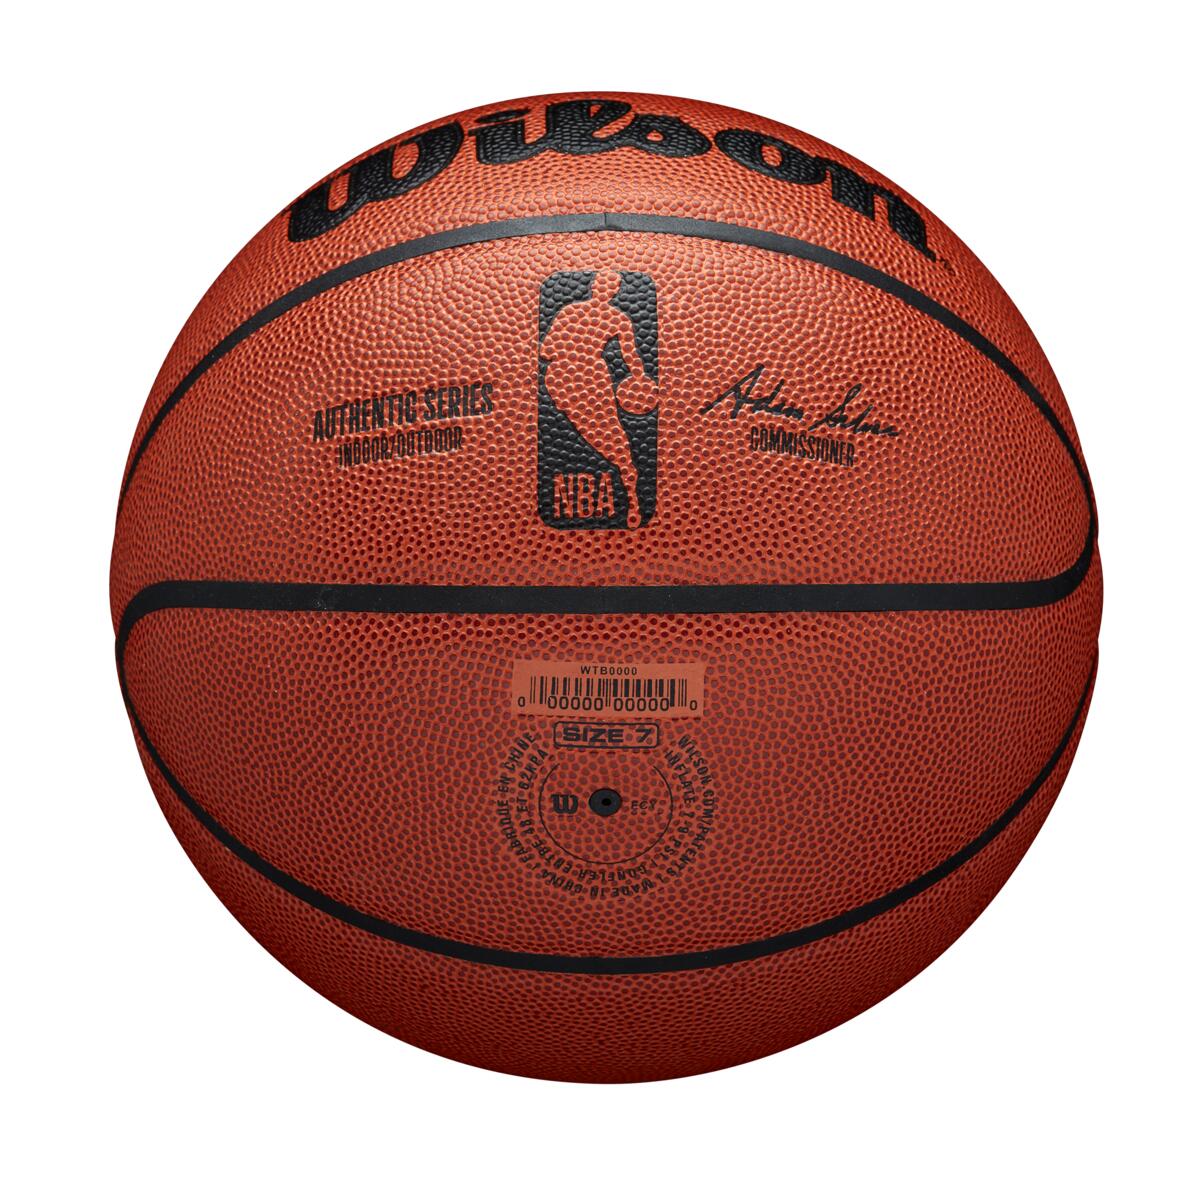 Balón Basketball Baloncesto Wilson Drive Nba #5 - Agaval